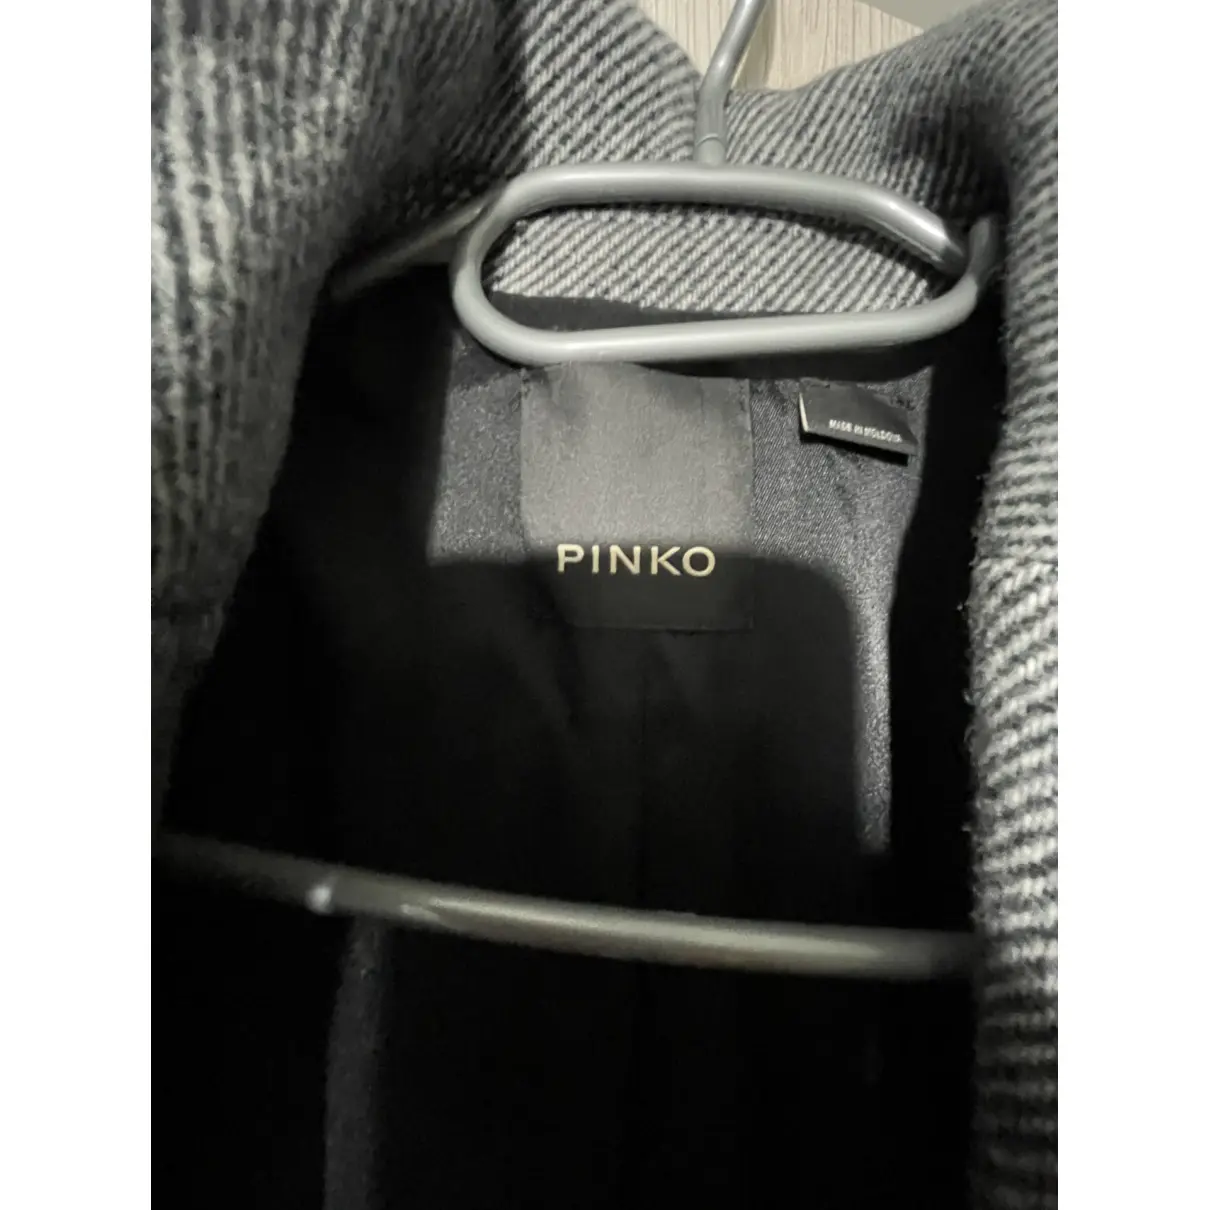 Buy Pinko Wool coat online